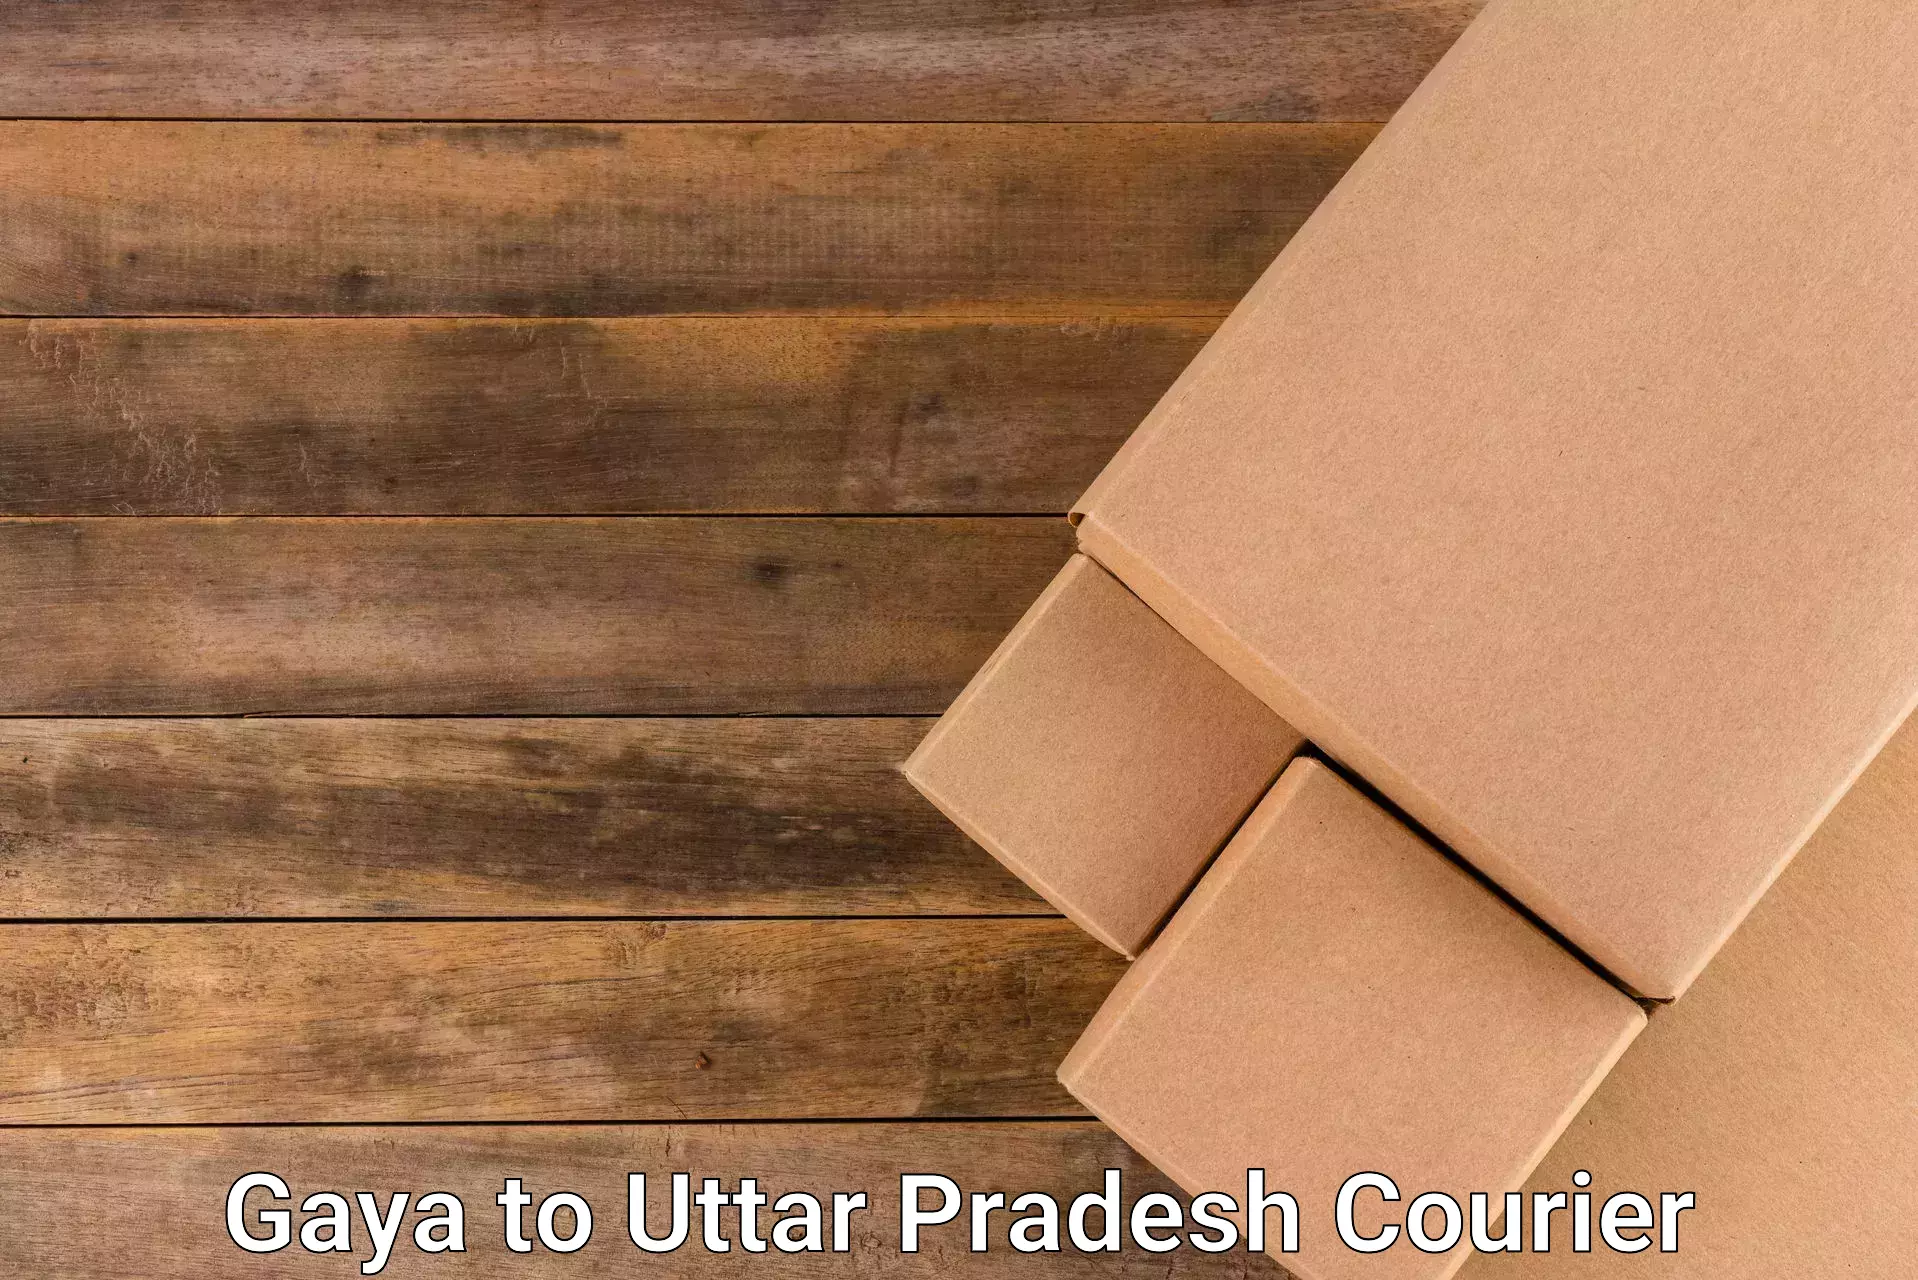 Courier app in Gaya to Chandauli